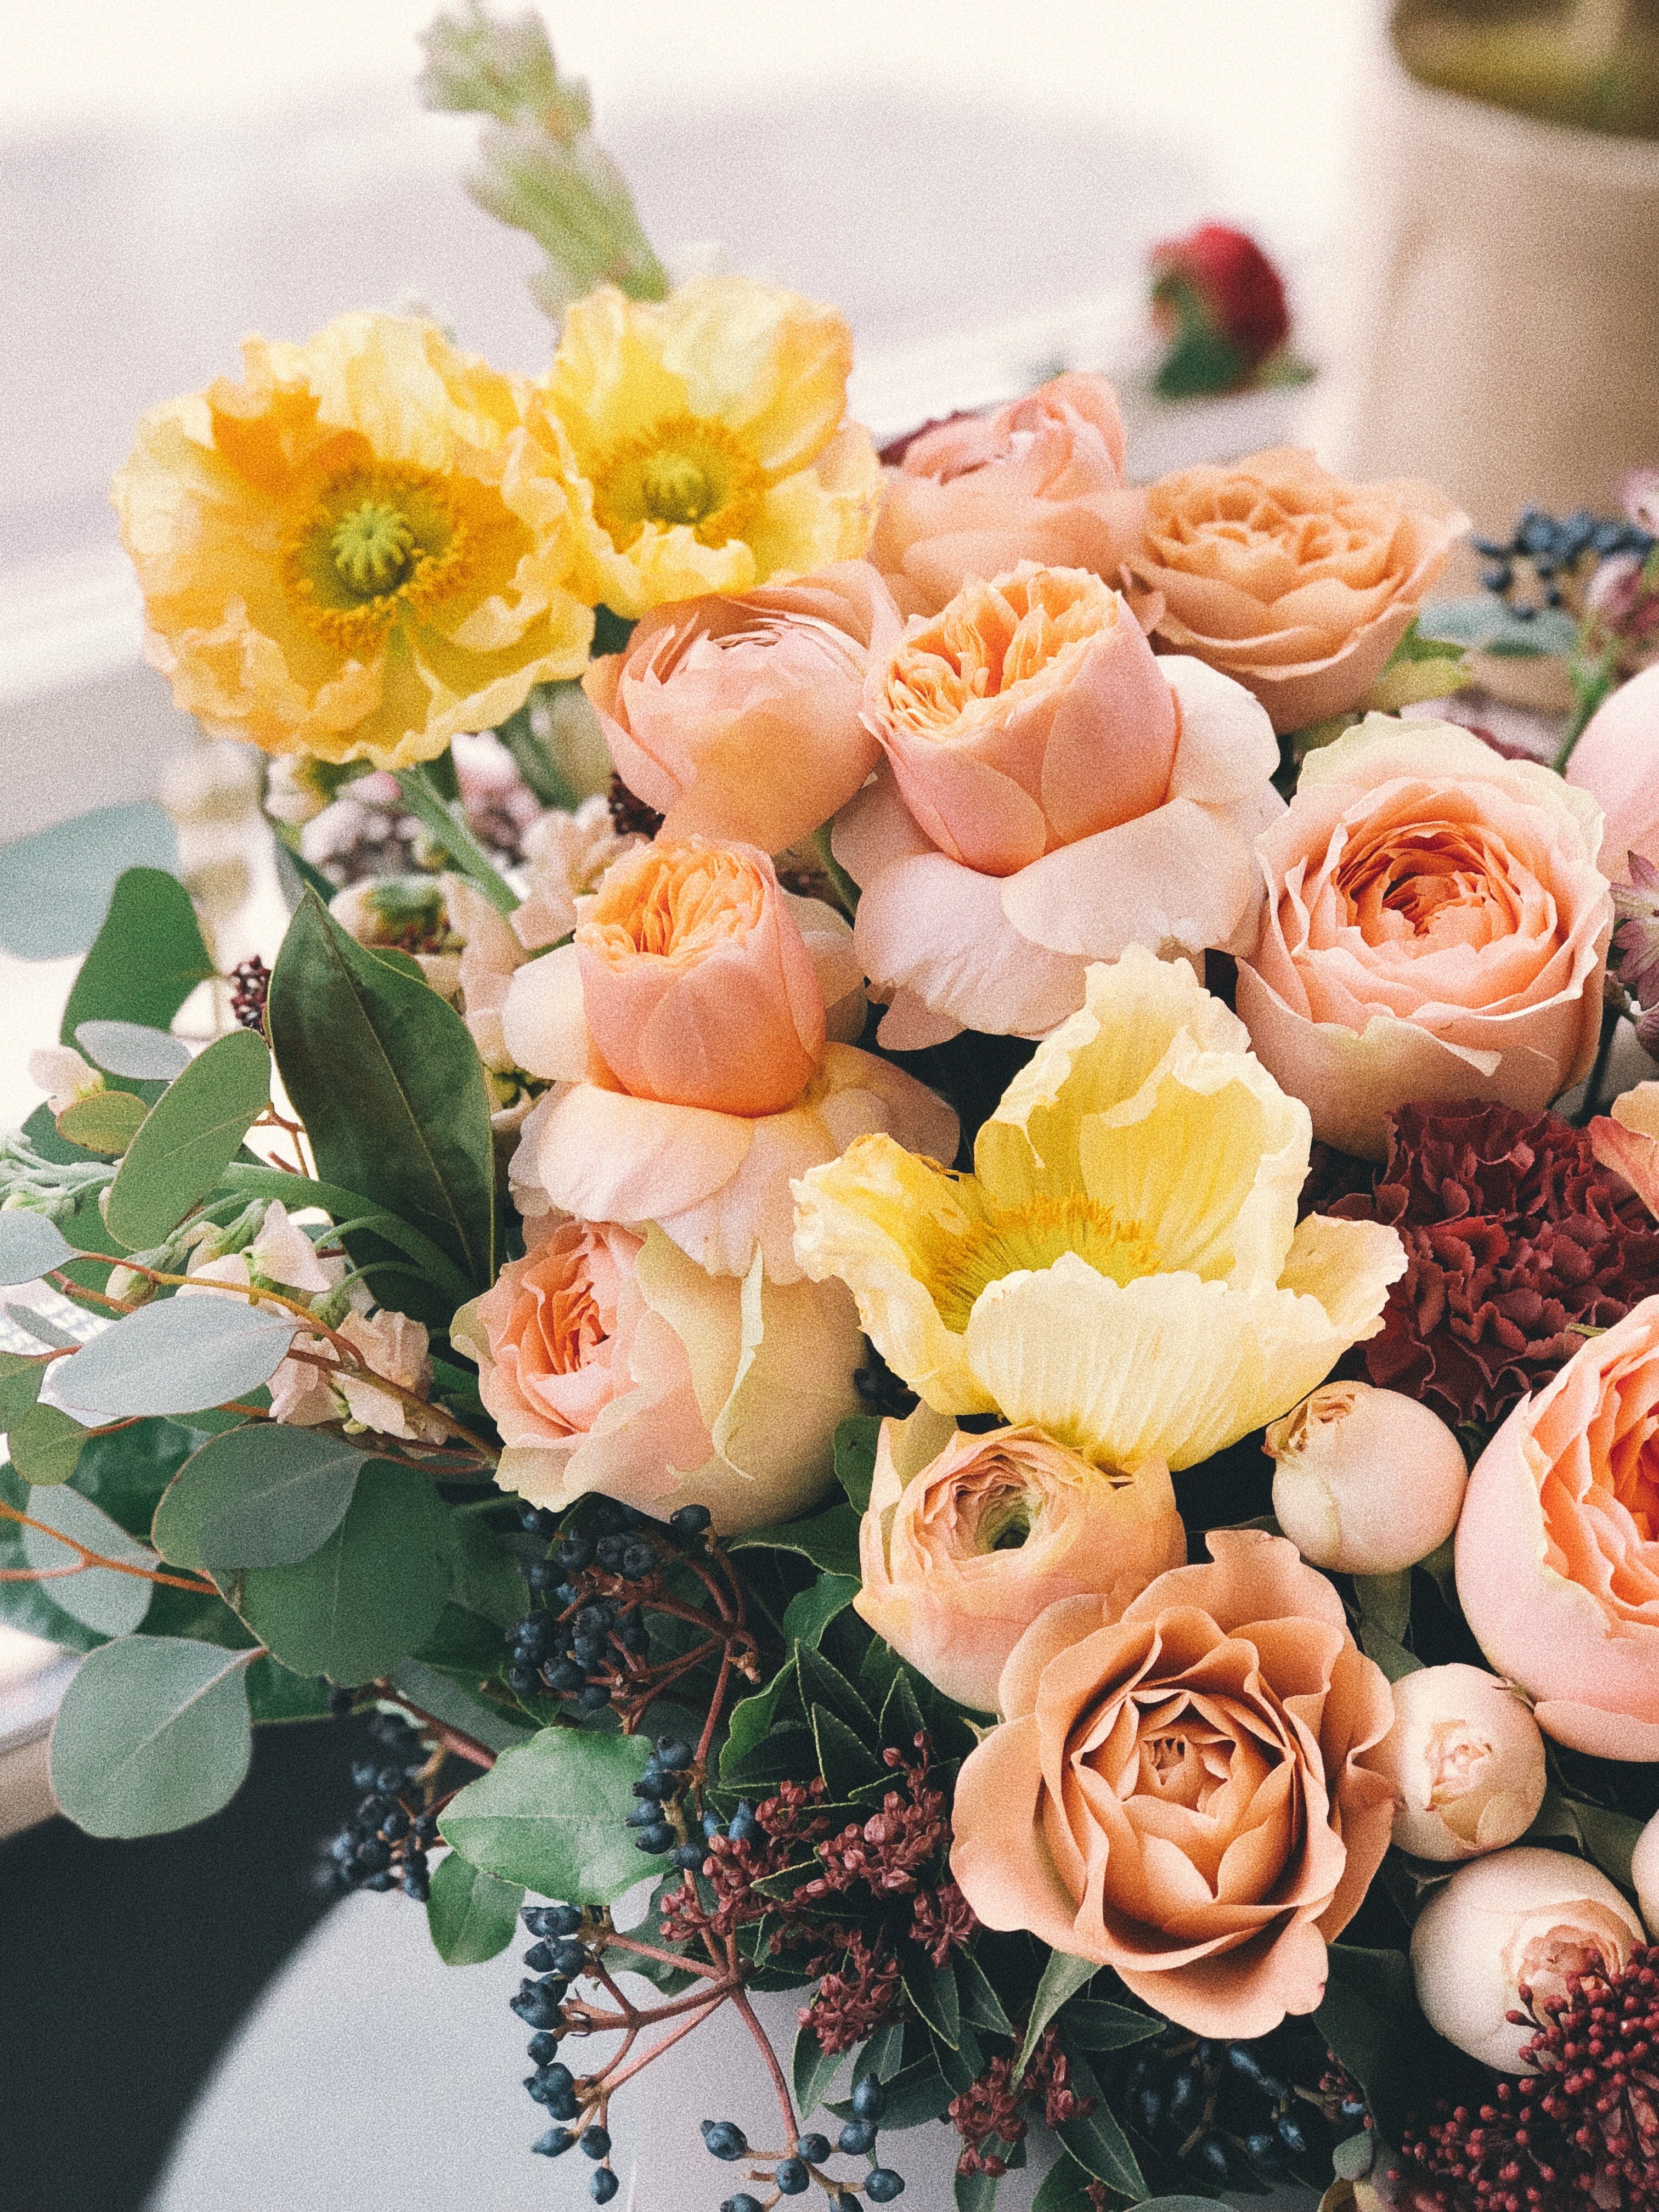 Edan hat einen großen Blumenstrauß für das Grab von Alice gekauft. | Quelle: Pexels